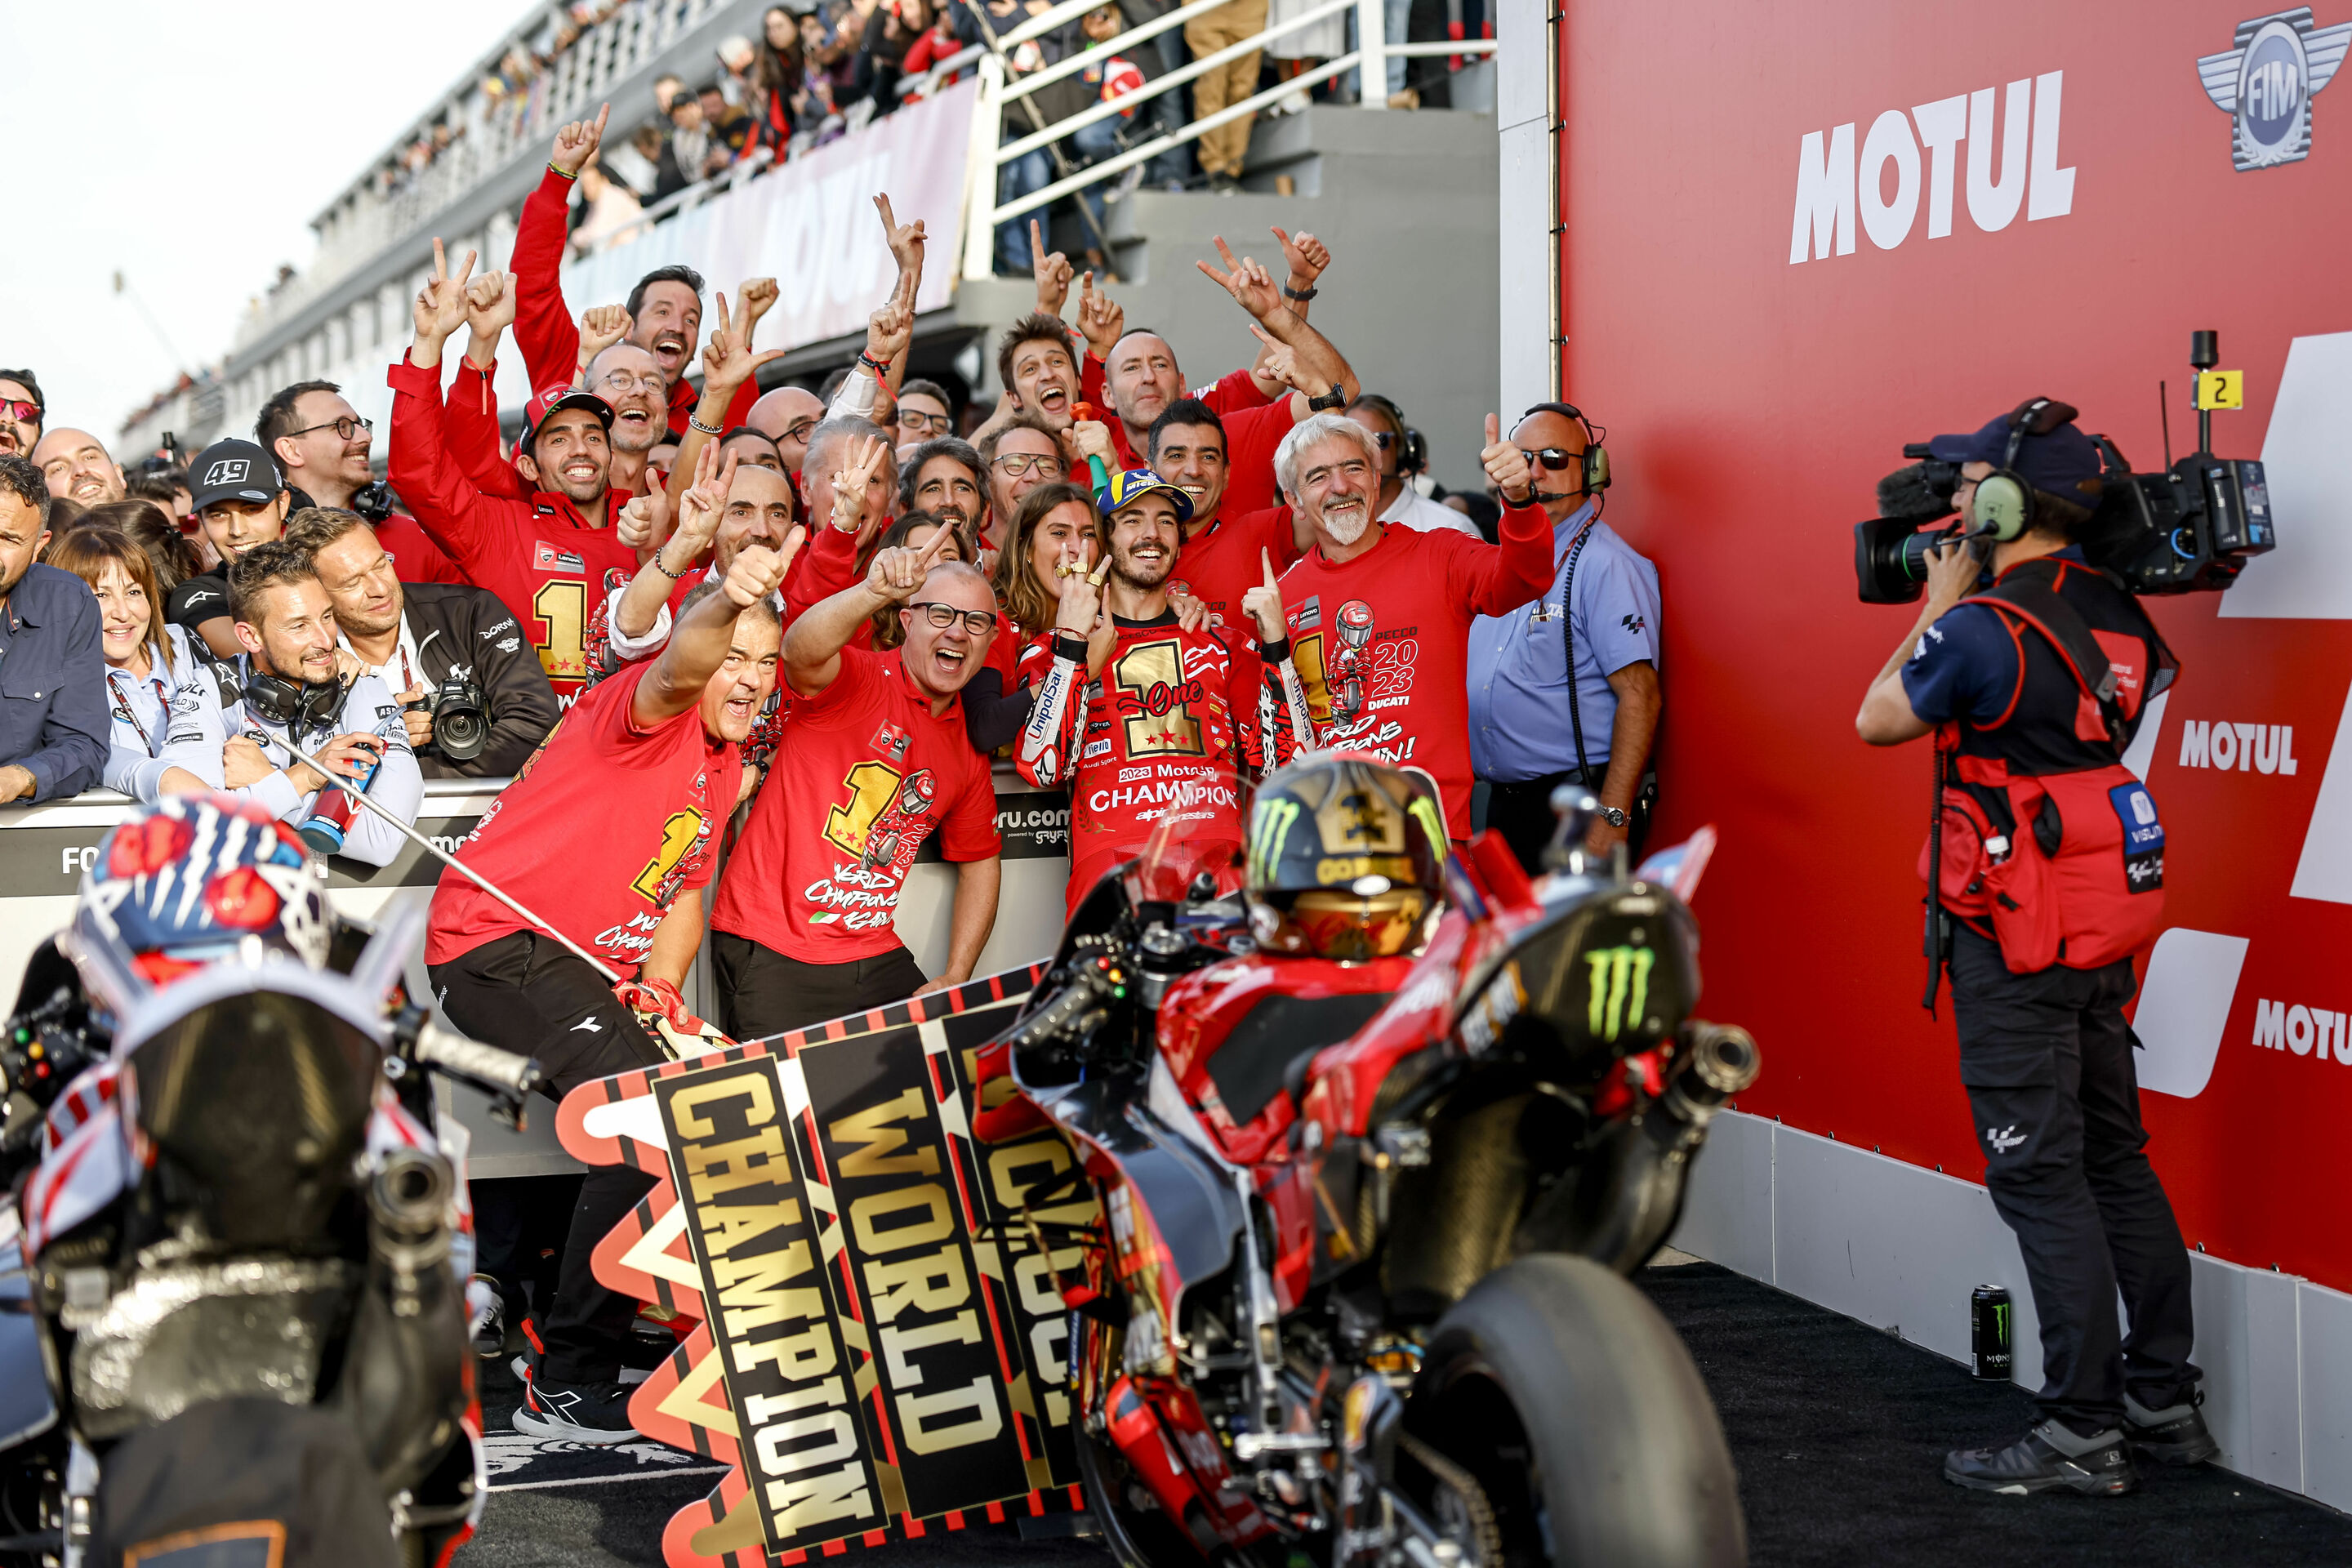 Ducati dominiert die Welt des Rennsports